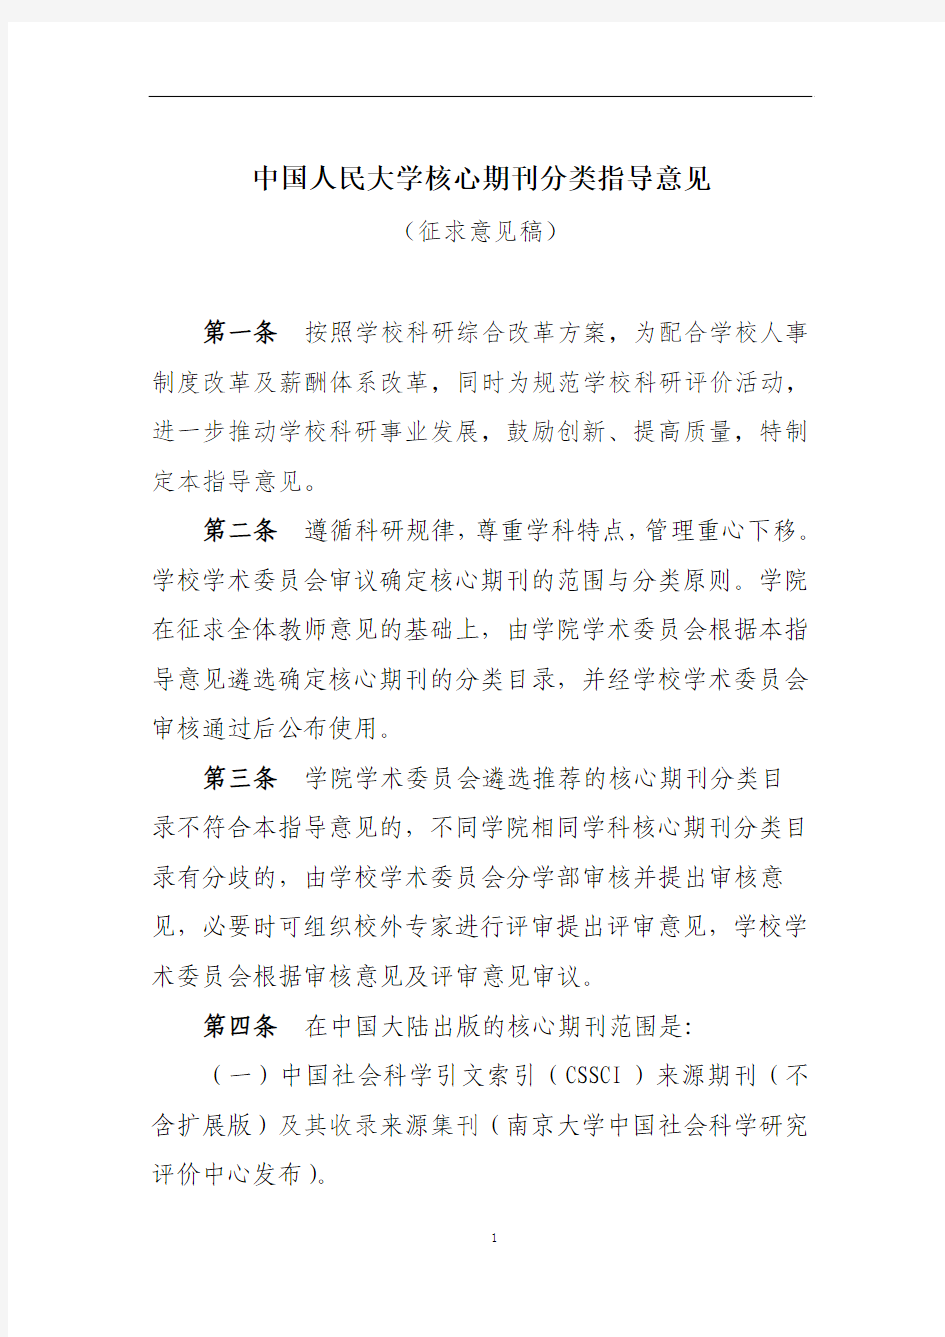 中国人民大学核心期刊分类指导意见